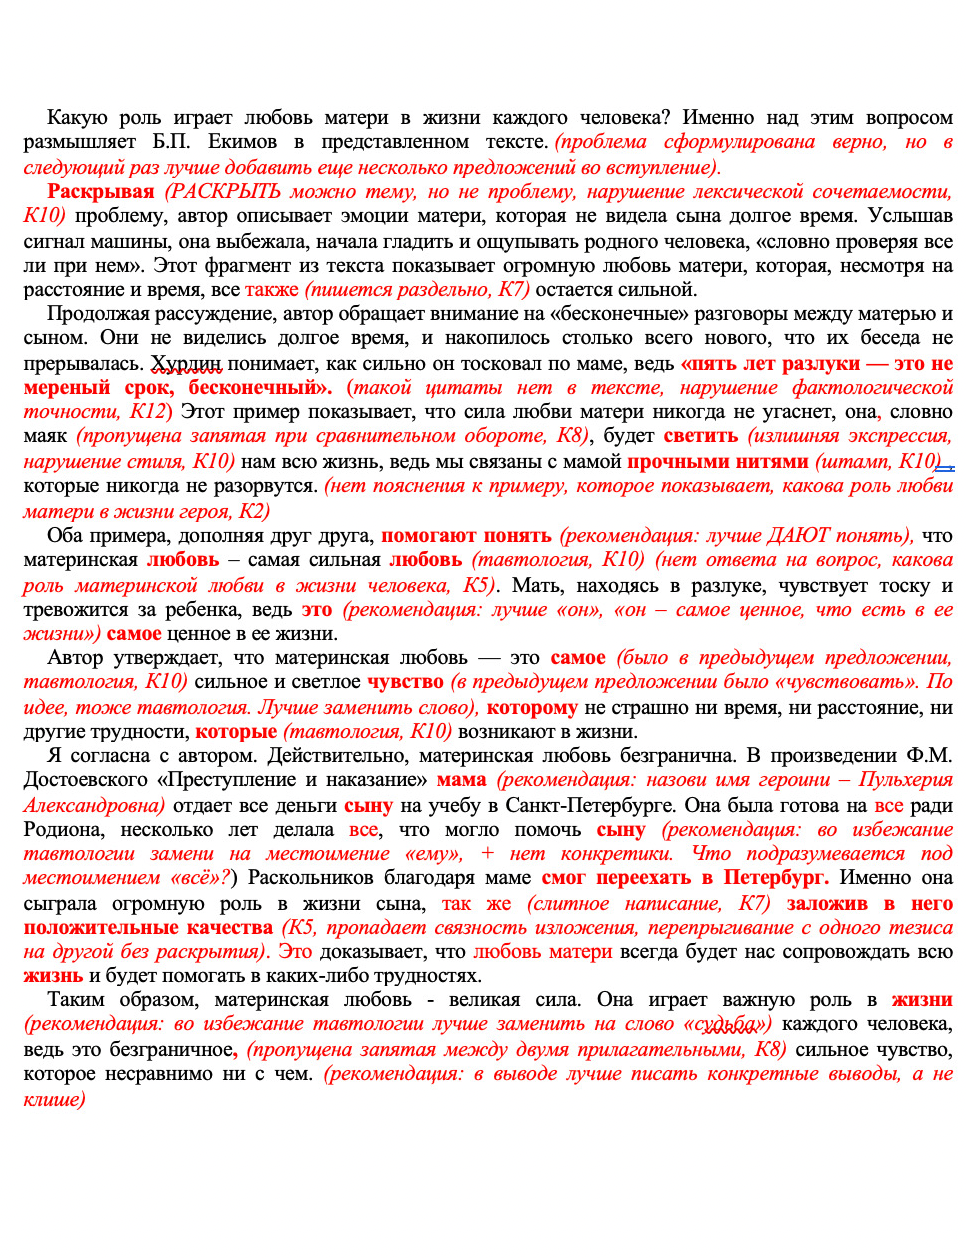 Пример проверки сочинения по русскому языку